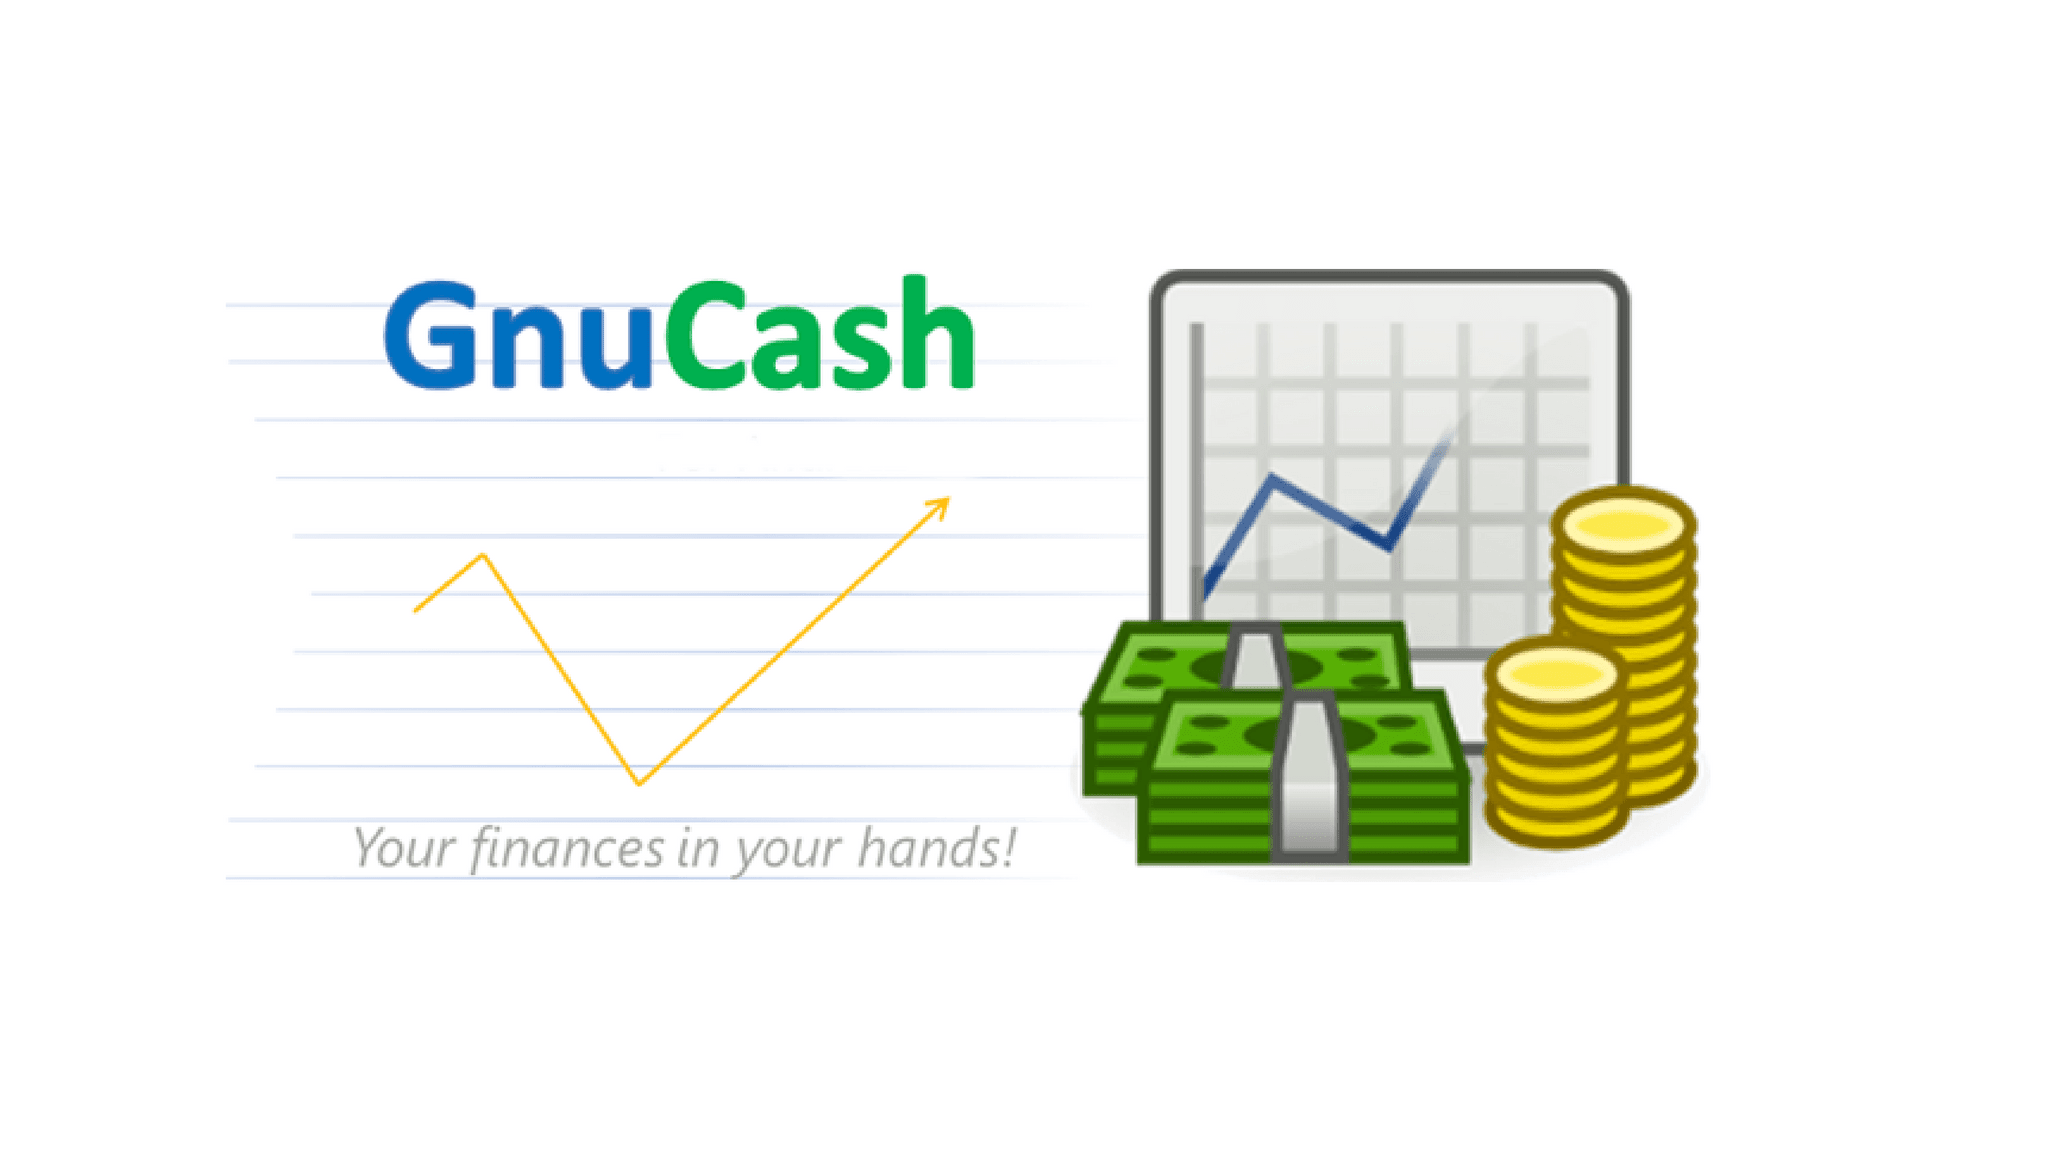 gnu cash